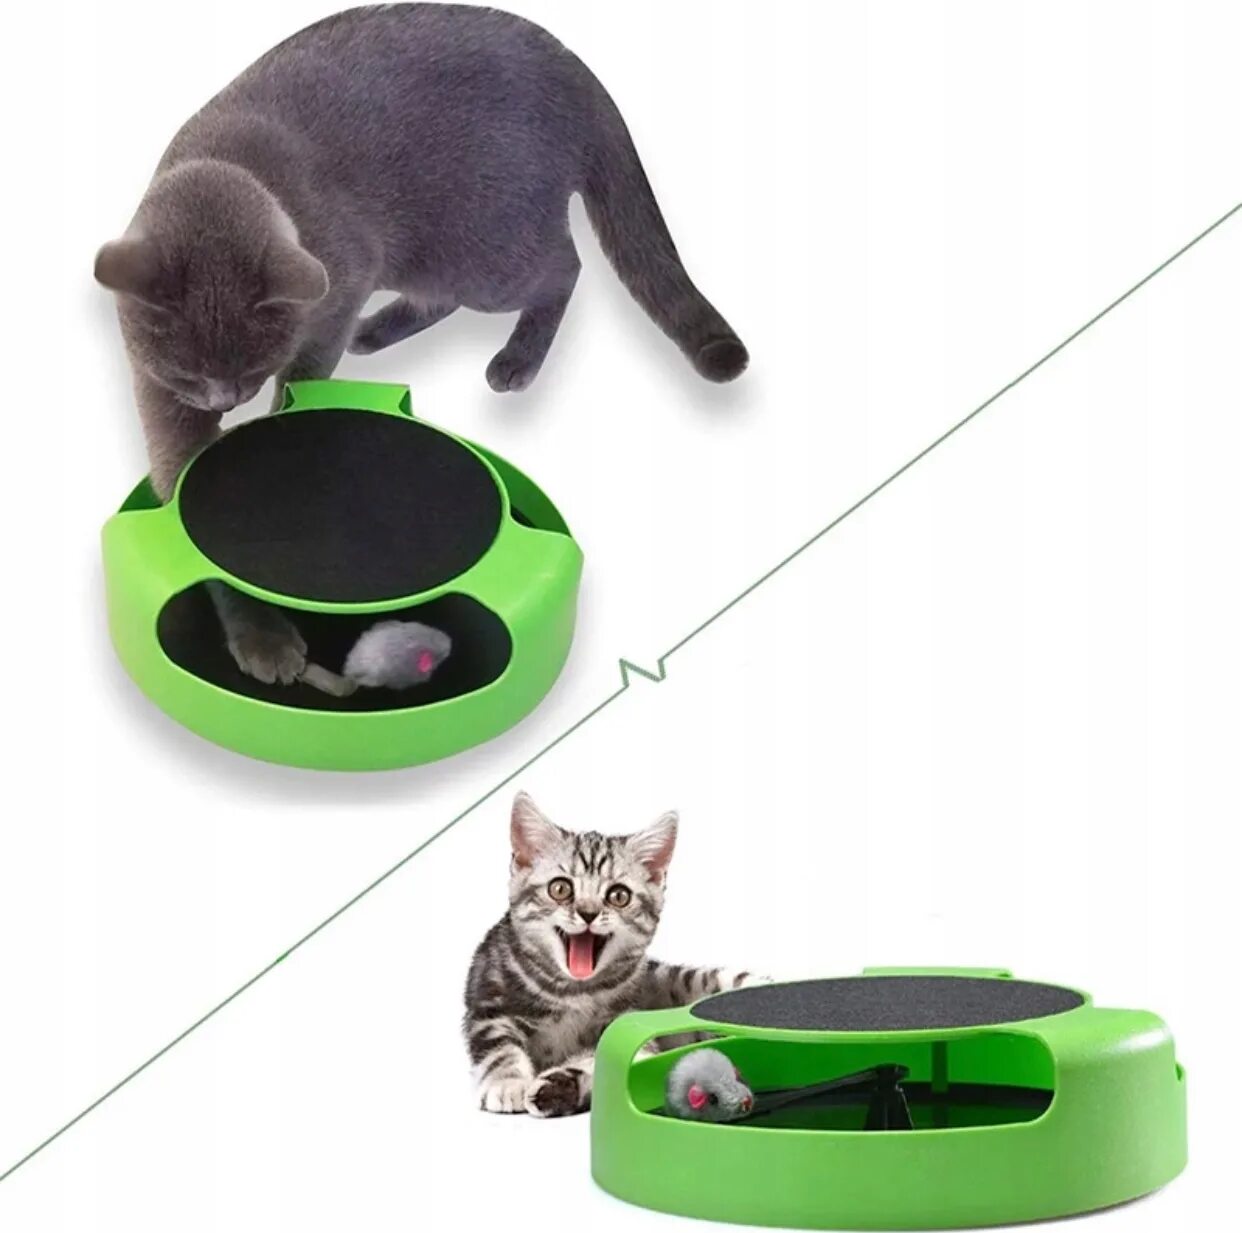 Бегающая мышь для кошек. Интерактивная игрушка кошка. Автоматическая игрушка для кошек. Интерактивная мышка для кошки. Бегающая игрушка для кошки.